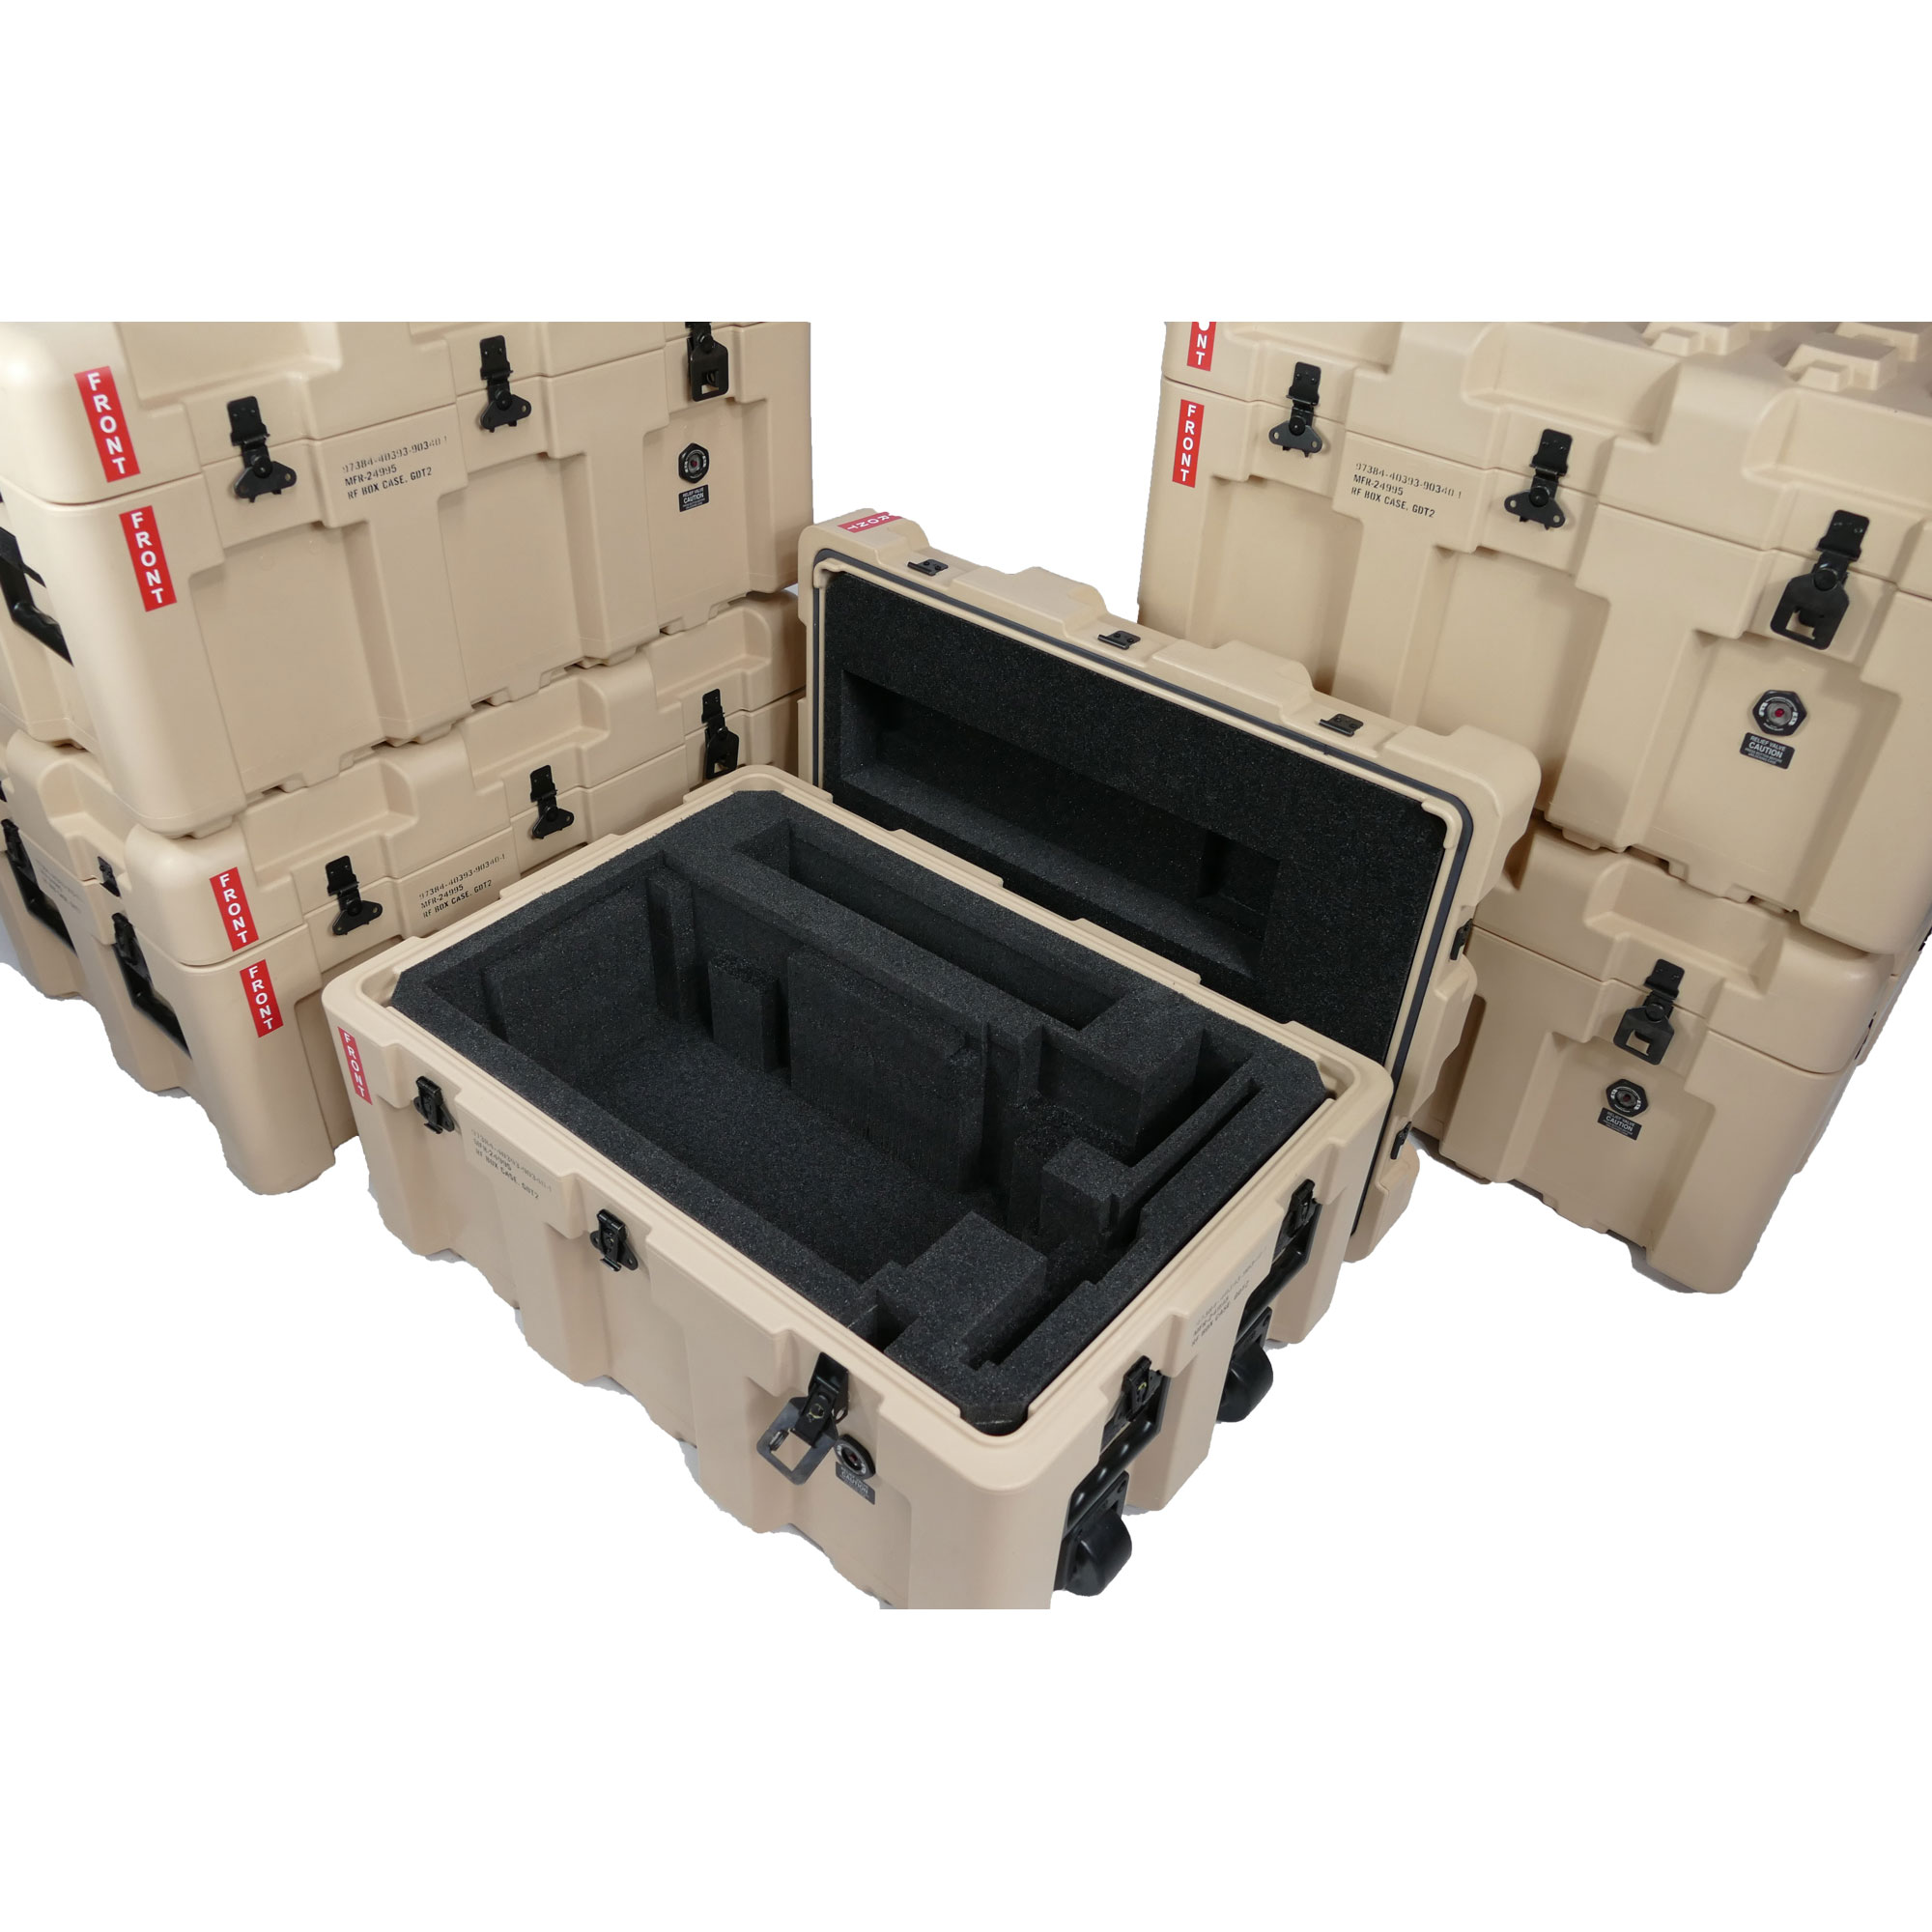 Custom Designed Foam Cases